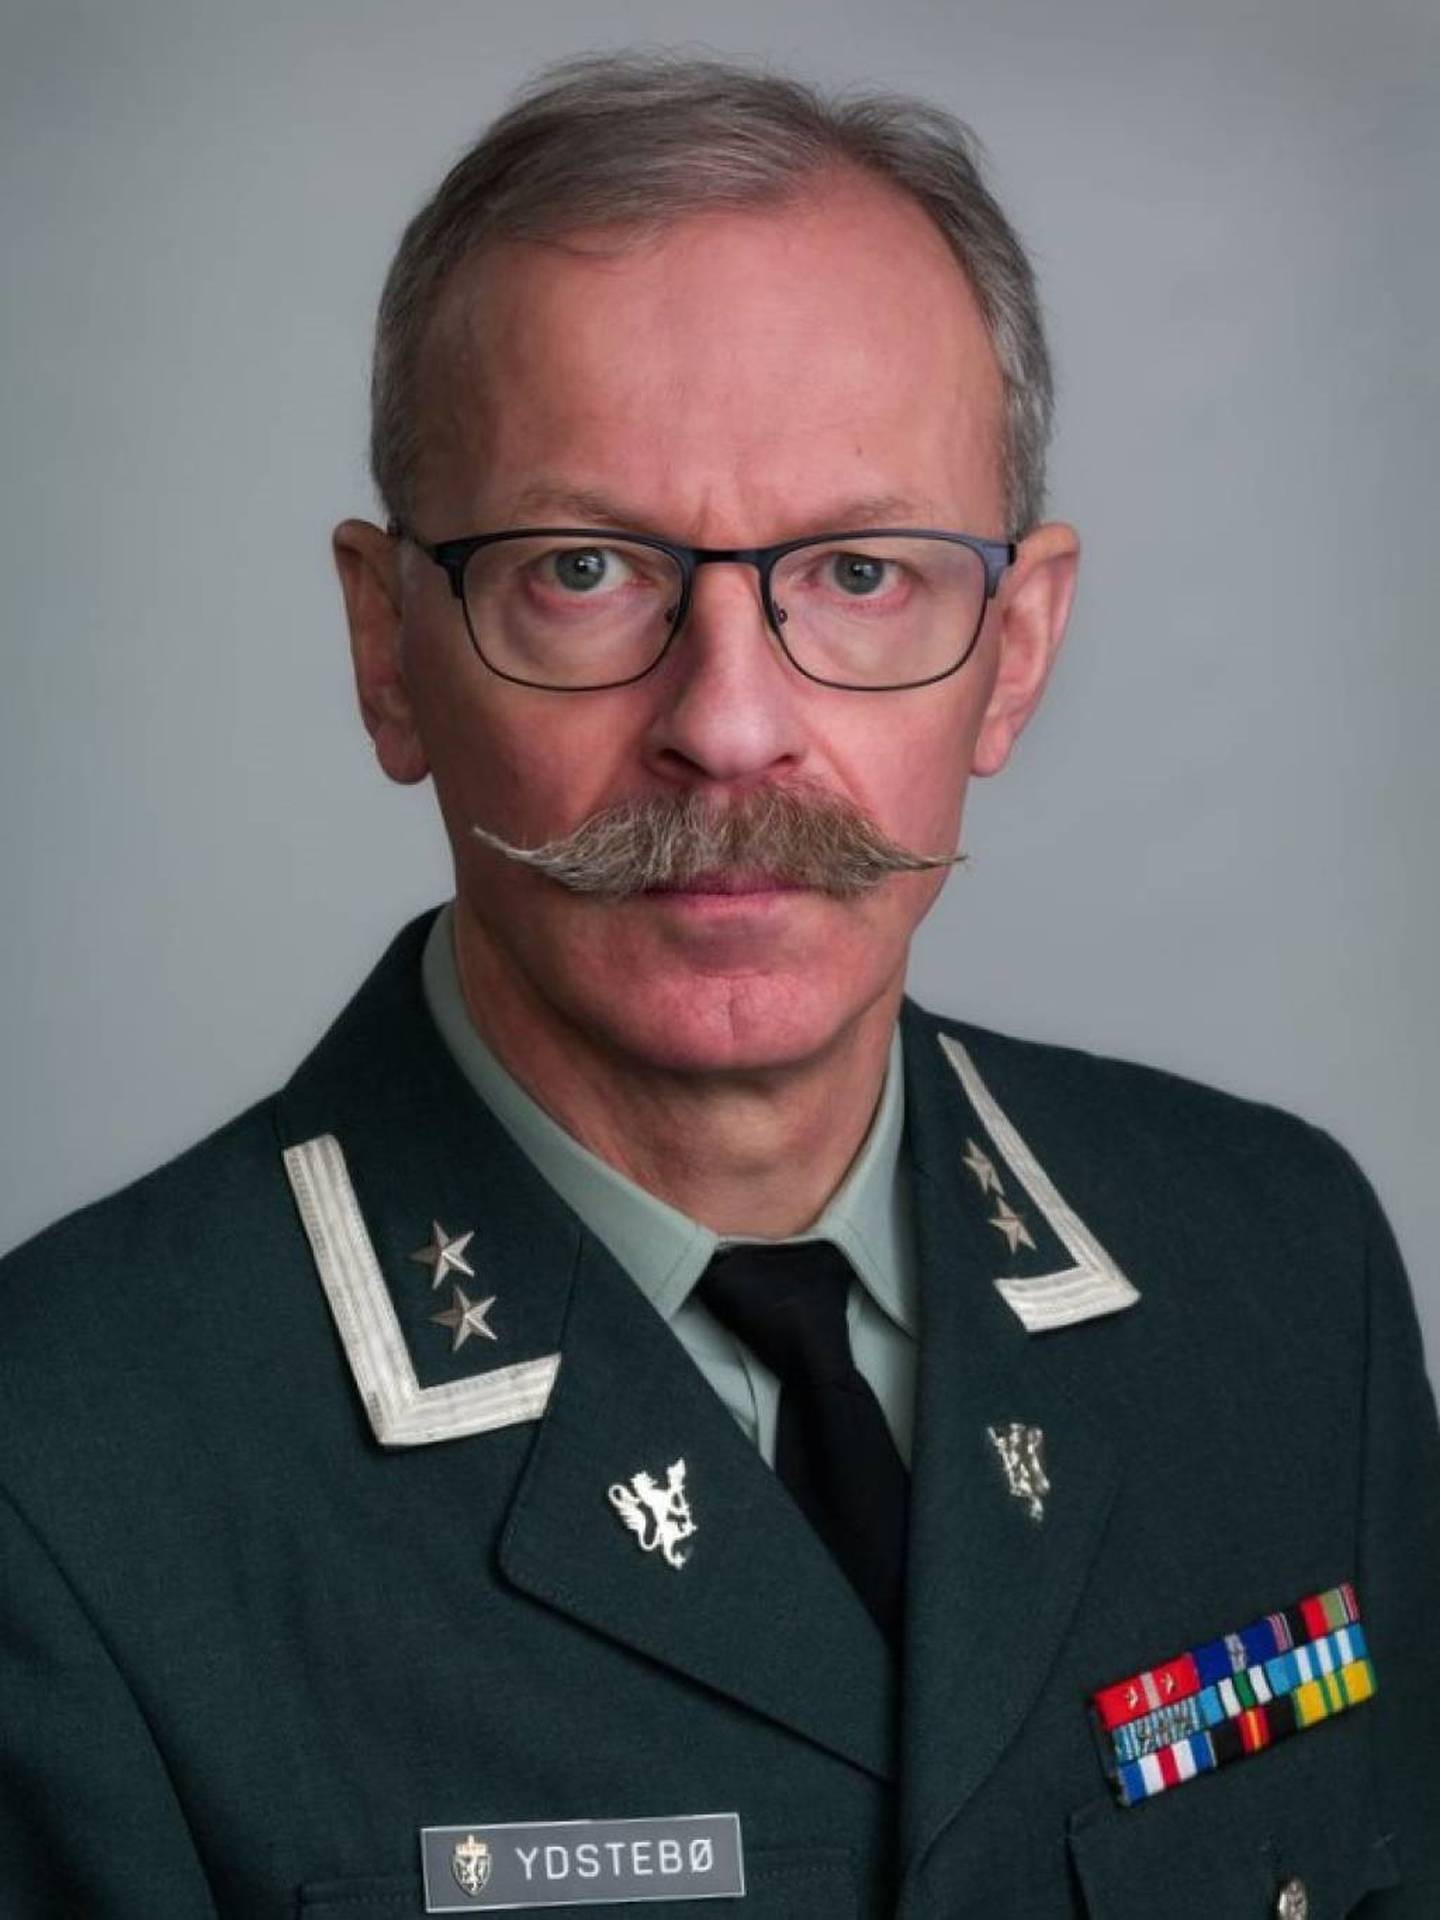 Oberstløytnant Palle Ydstebø er hovedlærer på Krigsskolen.